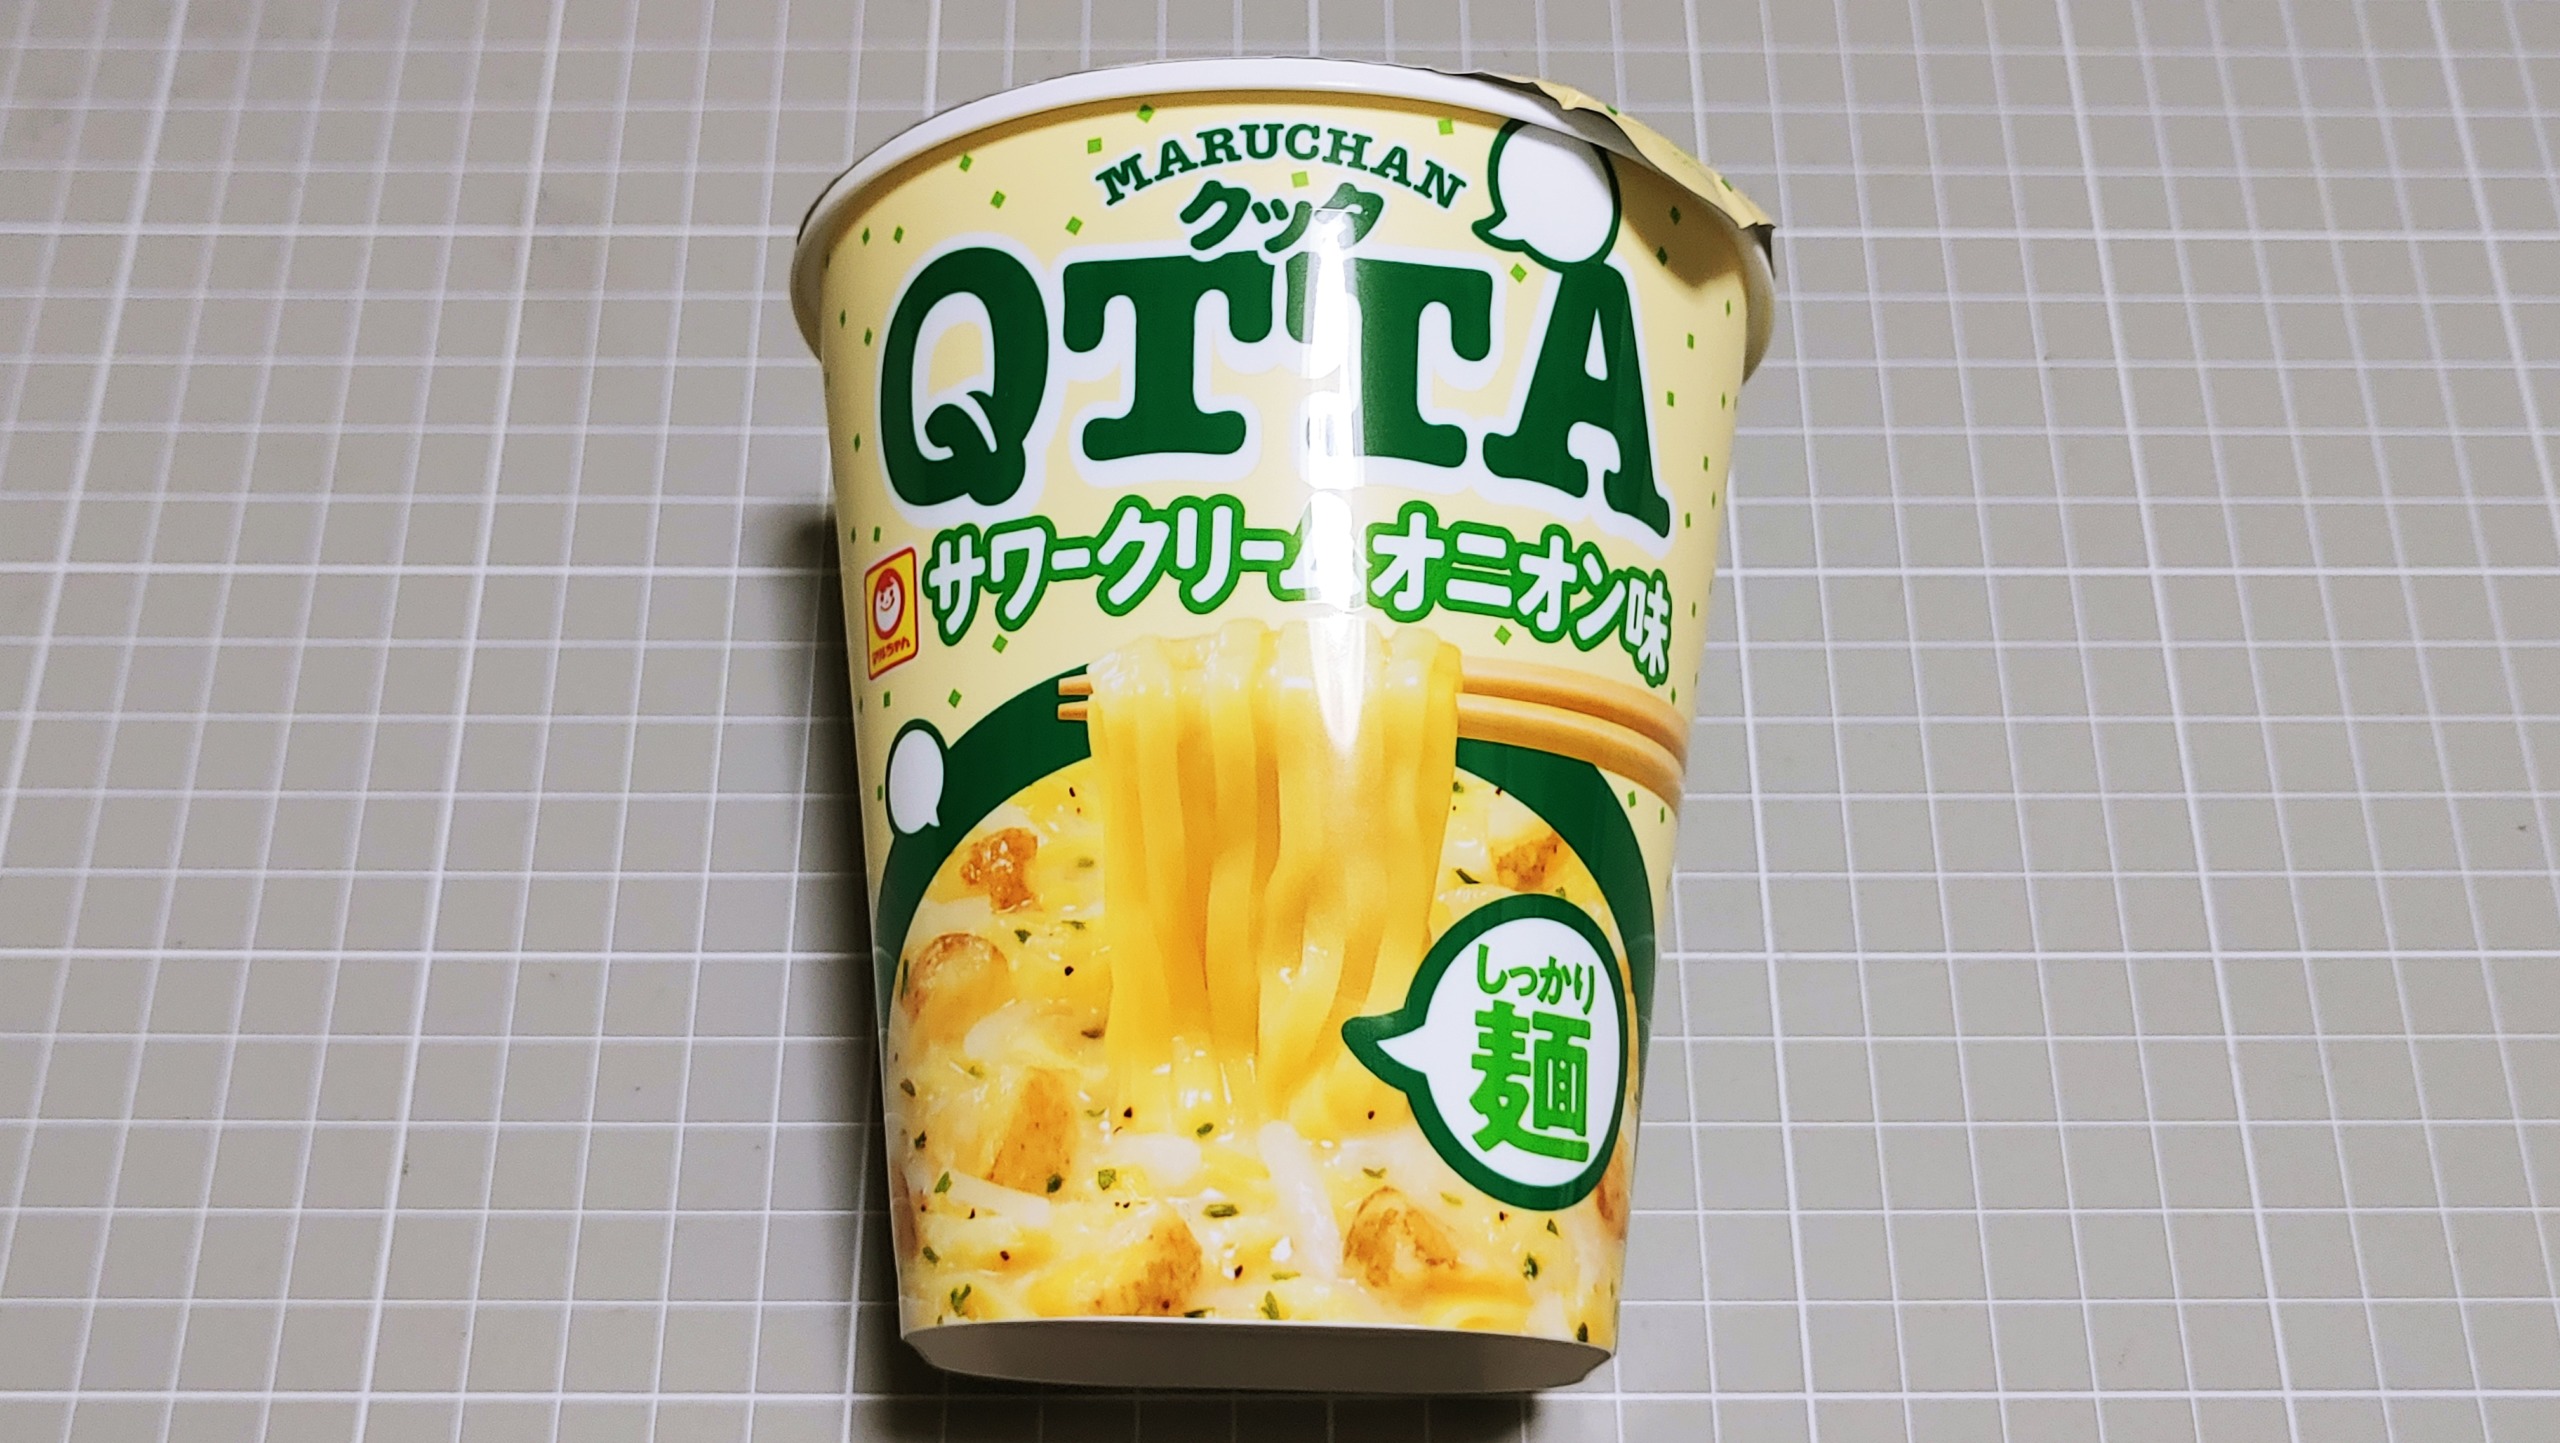 マルちゃん QTTA サワークリームオニオン味